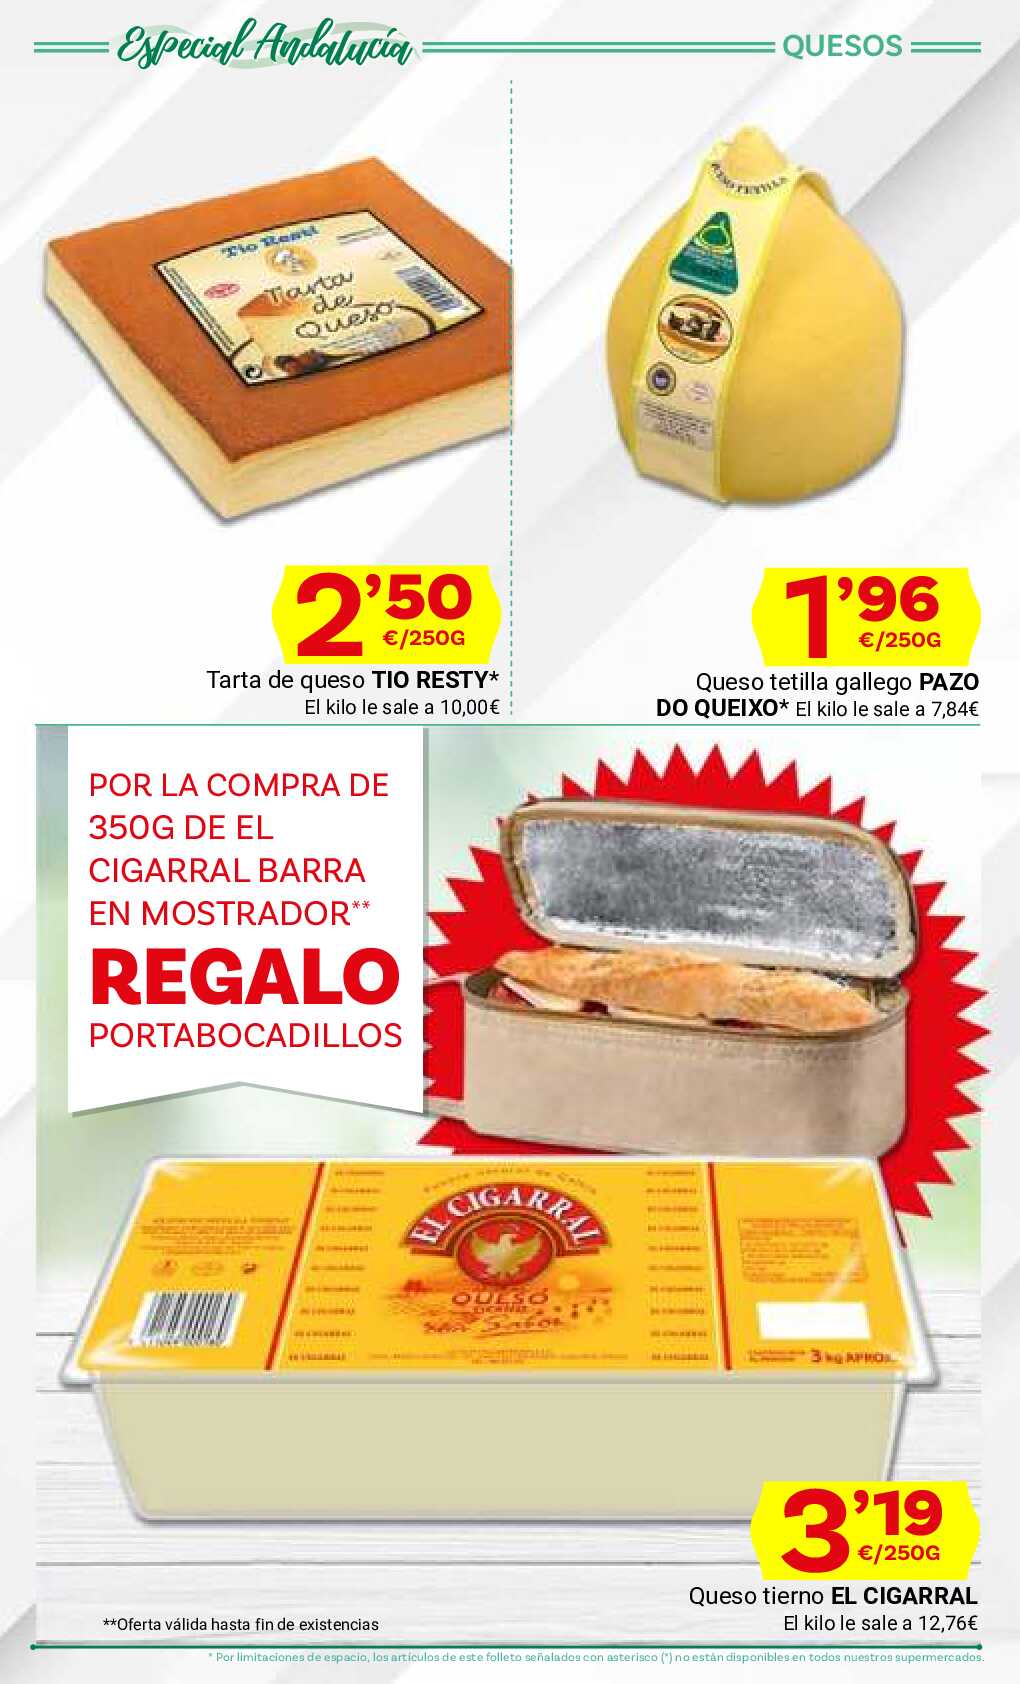 Ofertas con lo mejor de Andalucía Supermercado Dani. Página 33